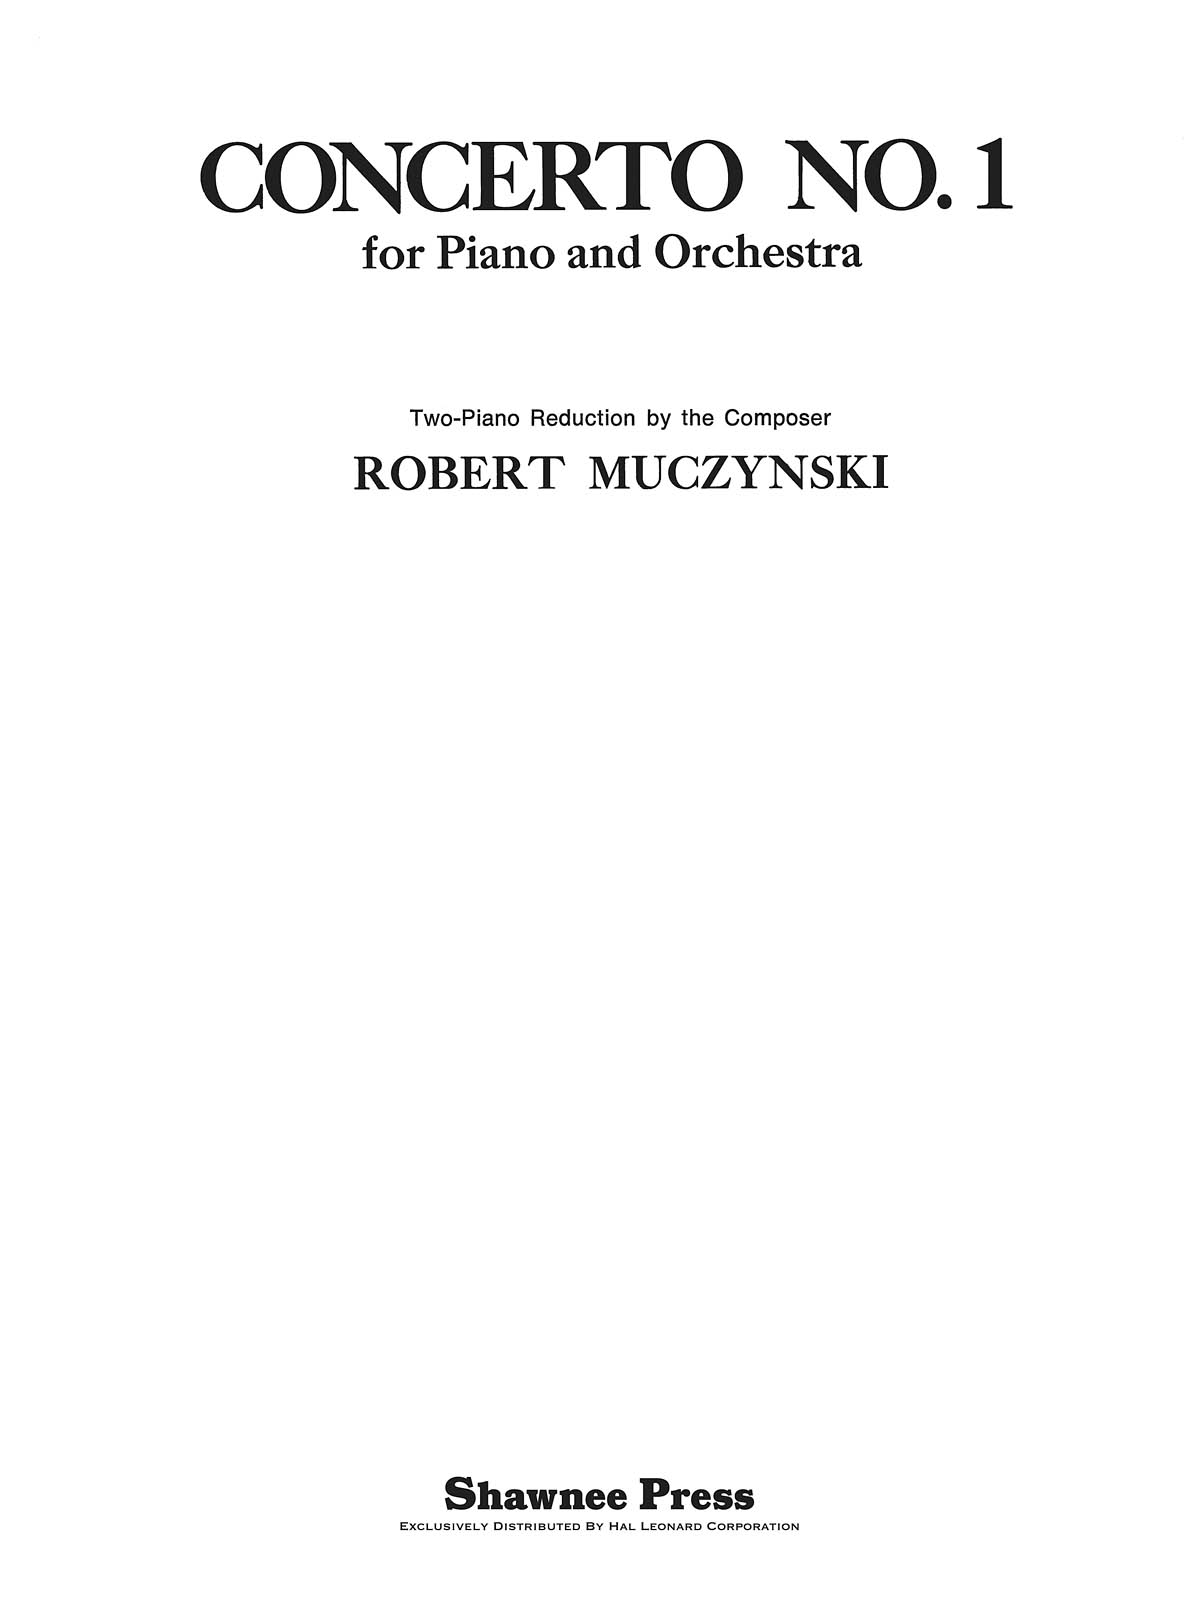 Robert Muczynski: Concerto No. 1: Piano Duet: Instrumental Album